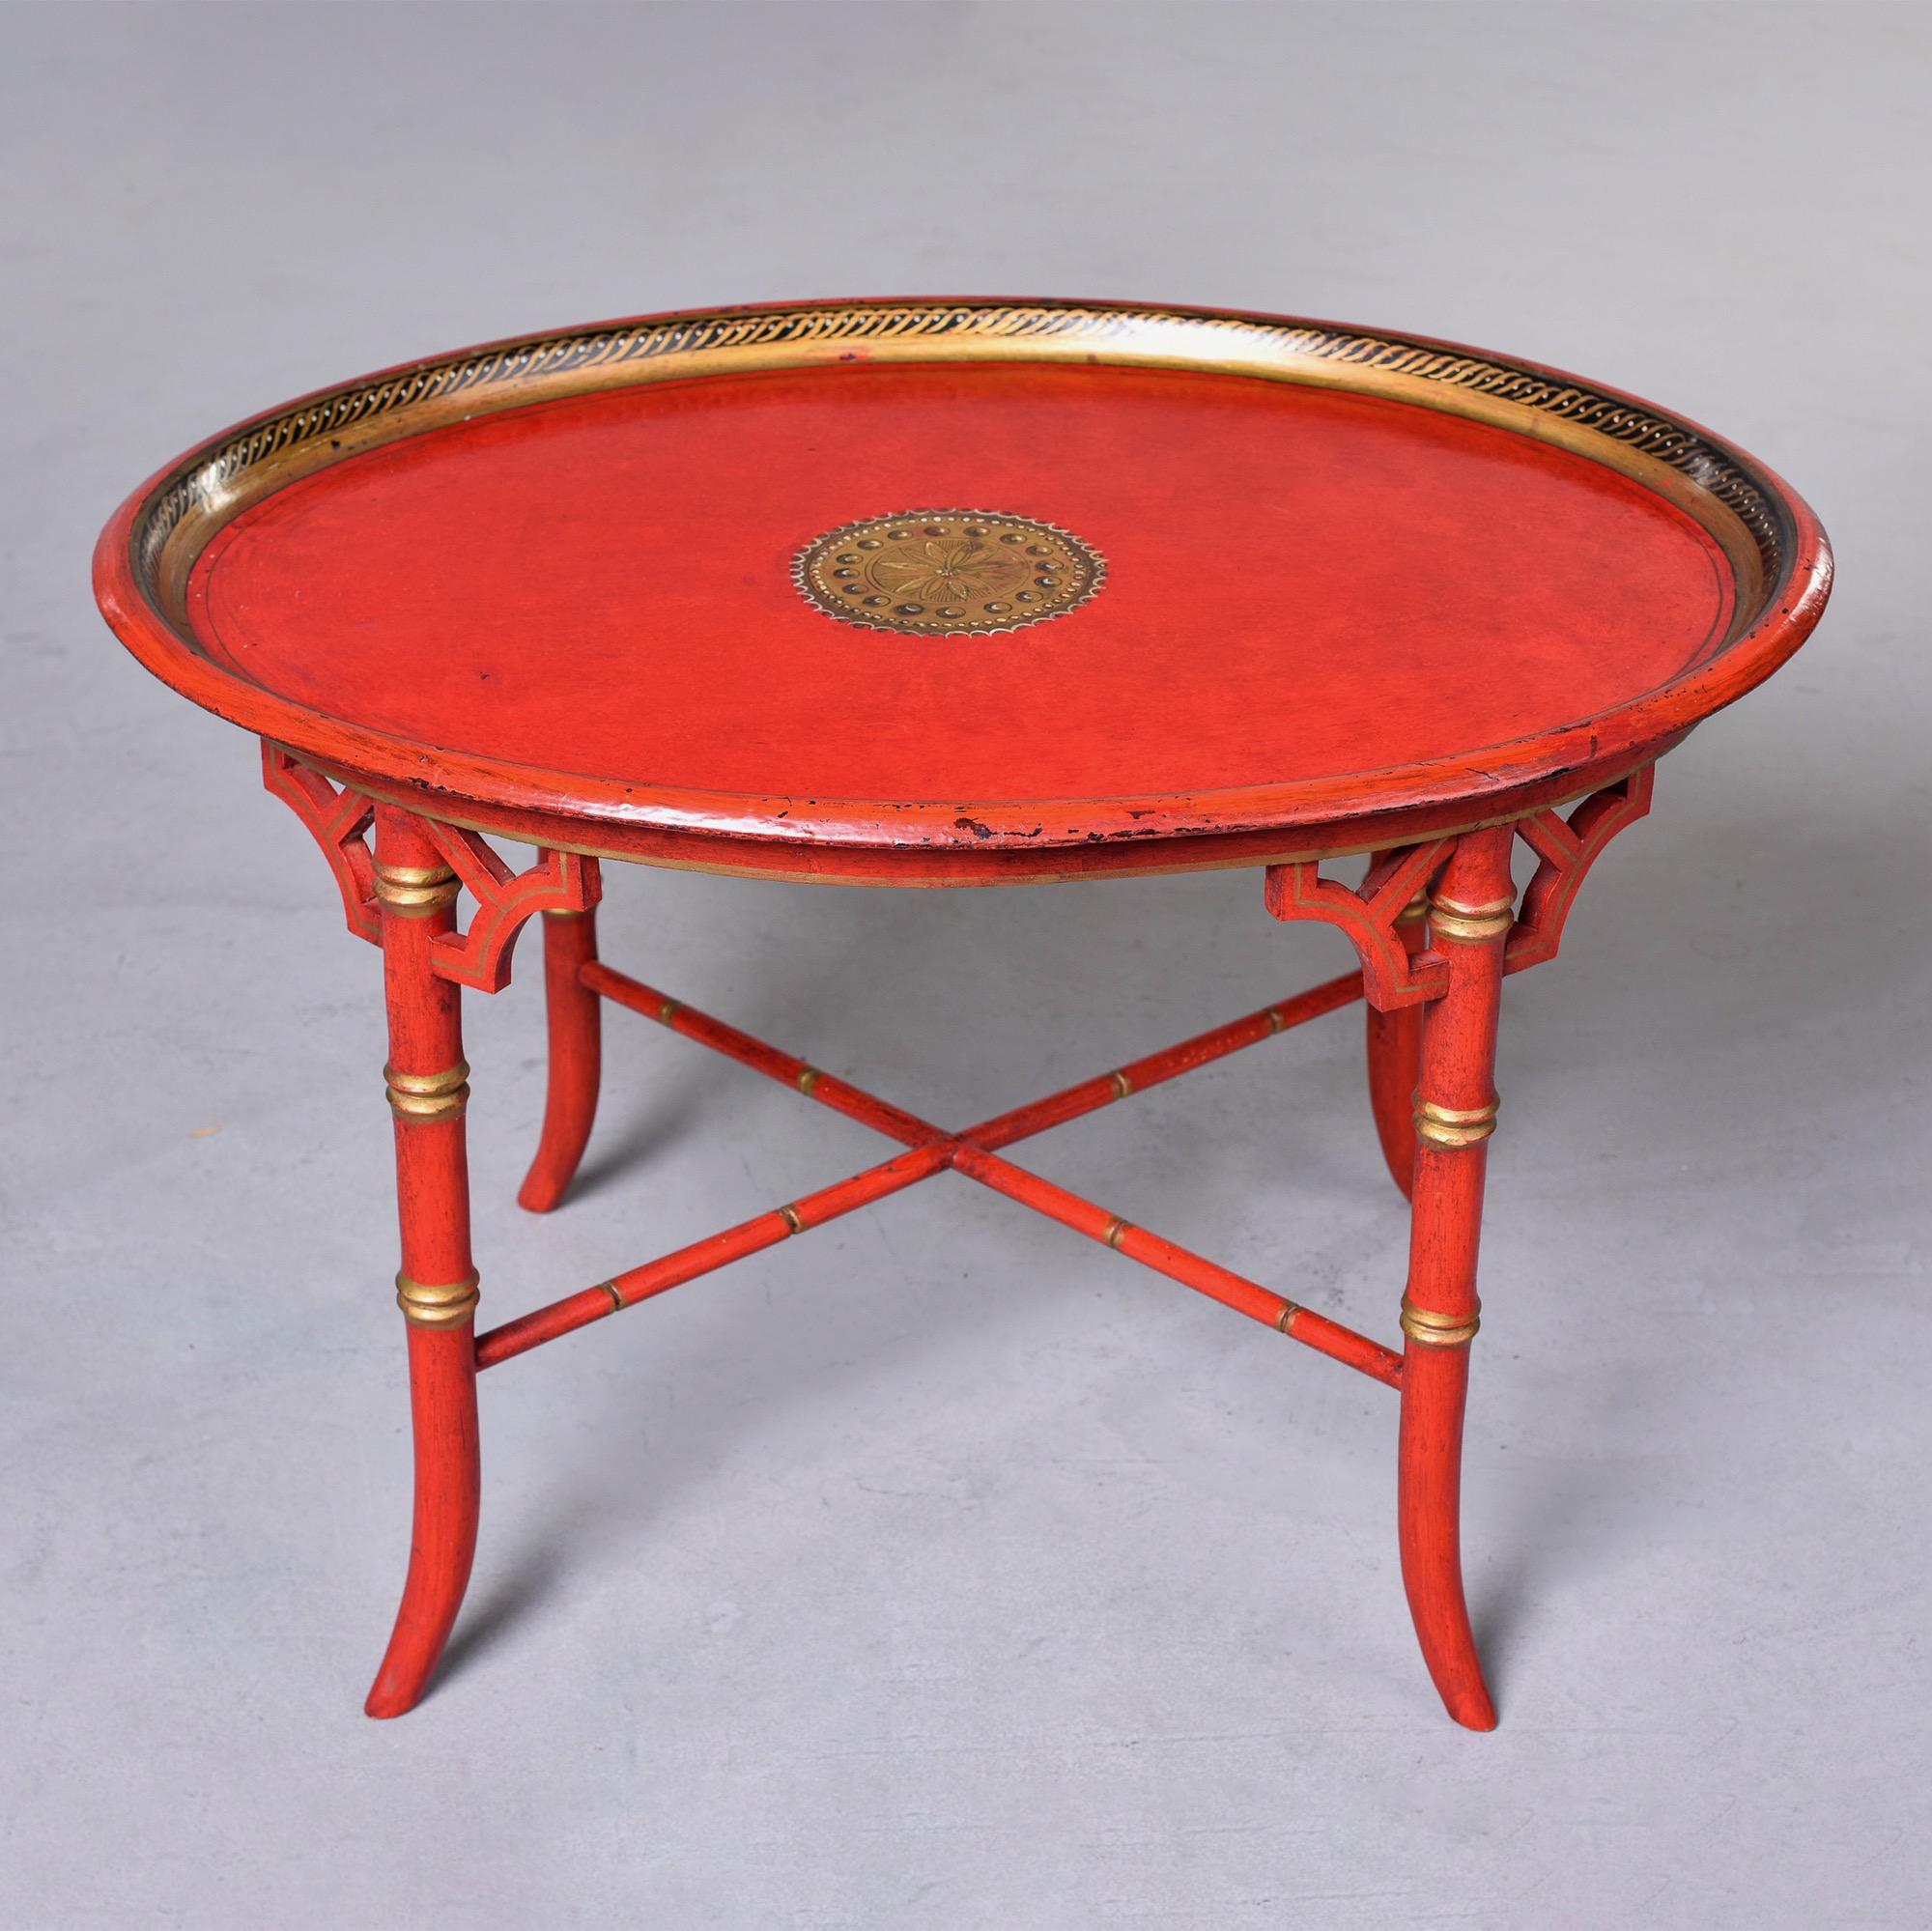 Trouvée en Angleterre, cette table d'appoint ovale rouge de style Chinoiserie datant des années 1930 présente une base en faux bambou avec un châssis en forme de X et des détails dorés. Le dessus de table ovale présente une bordure dorée peinte